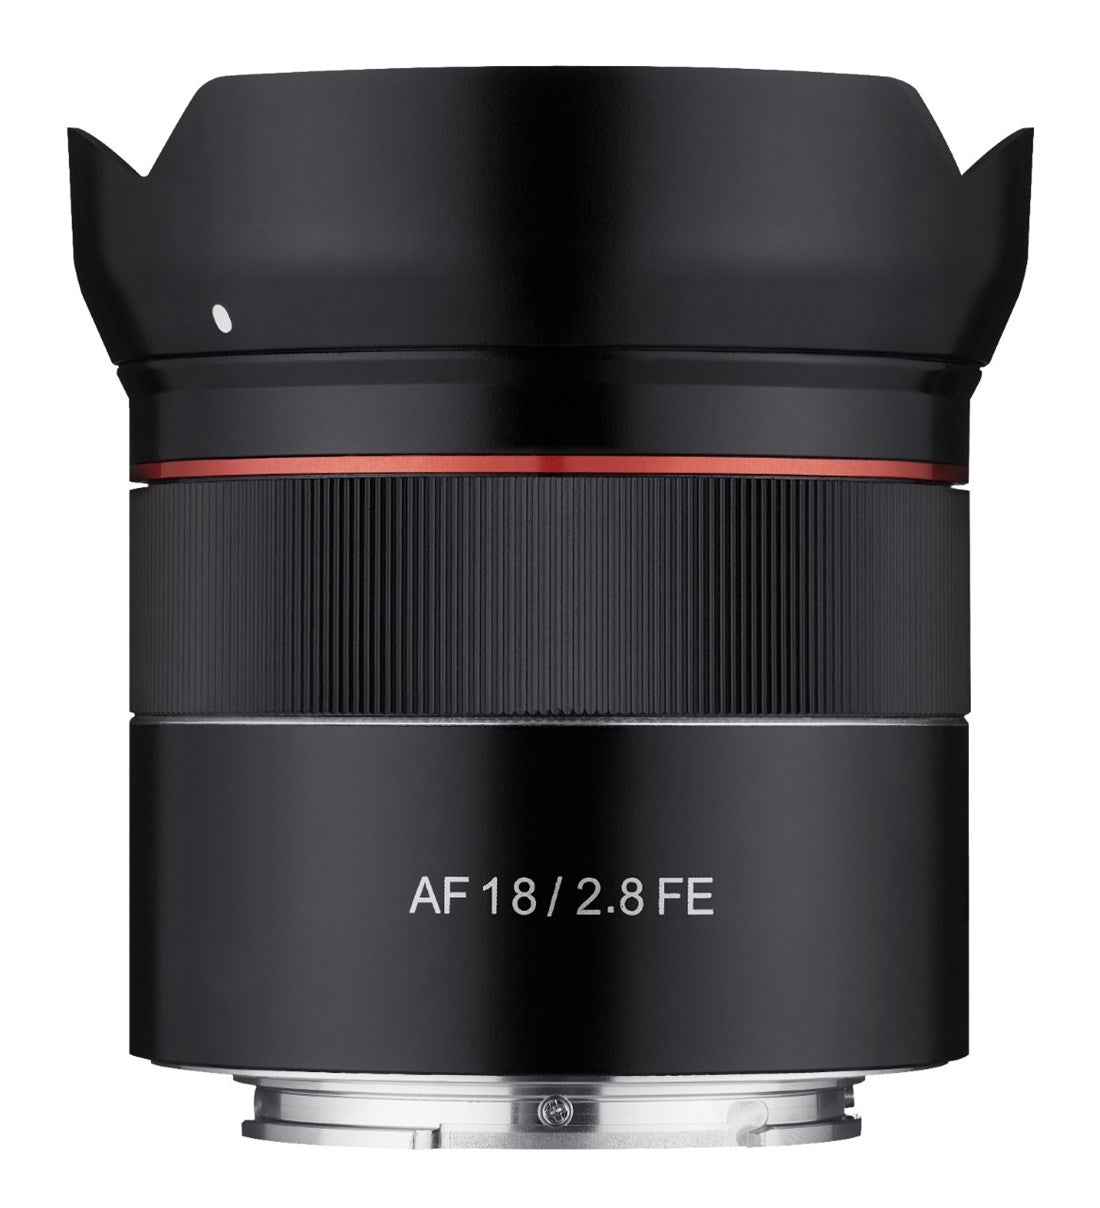 Product Image of Samyang AF 18mm F2.8 Lens for Sony FE